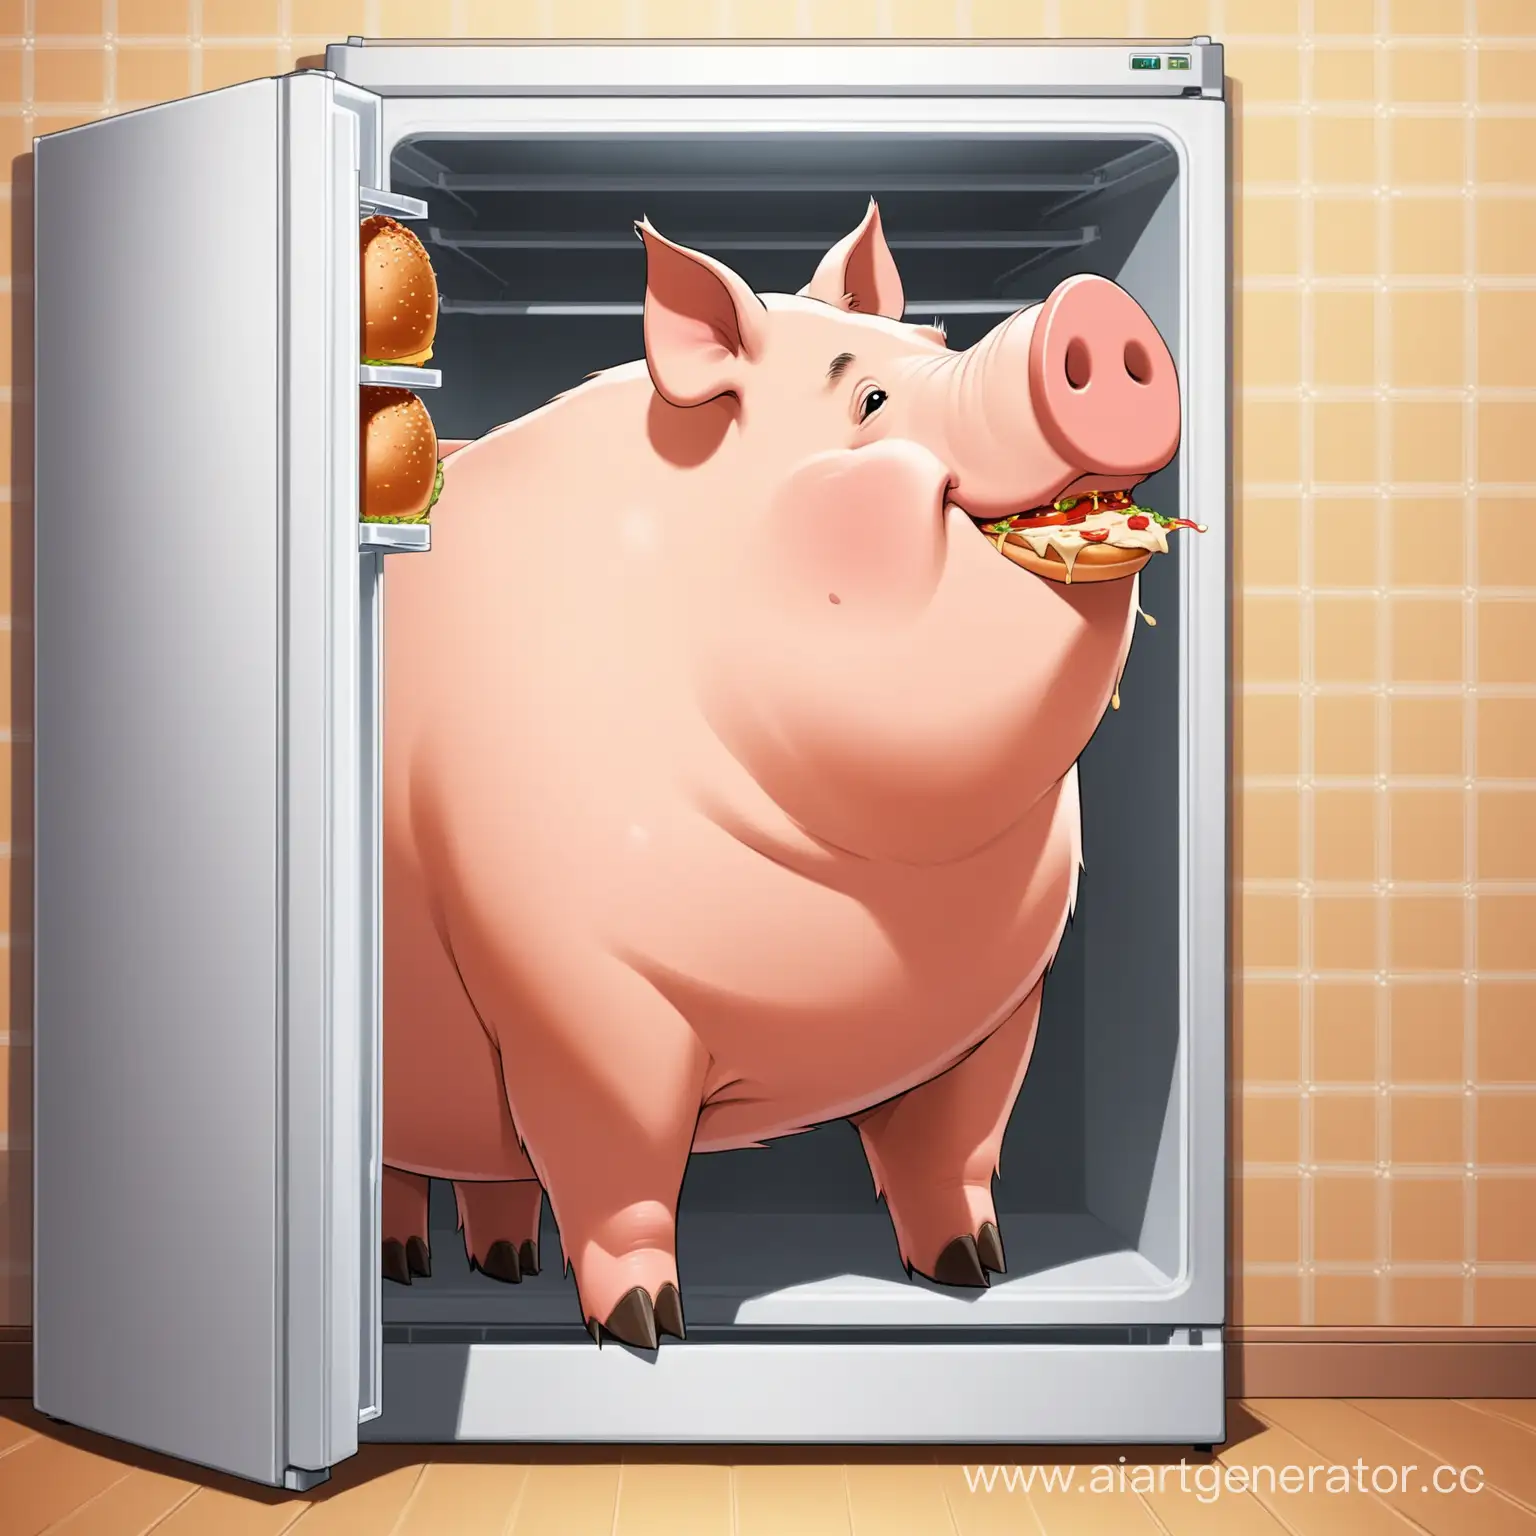 Большая свинья которую зовут Костя пожирает еду из холодильника